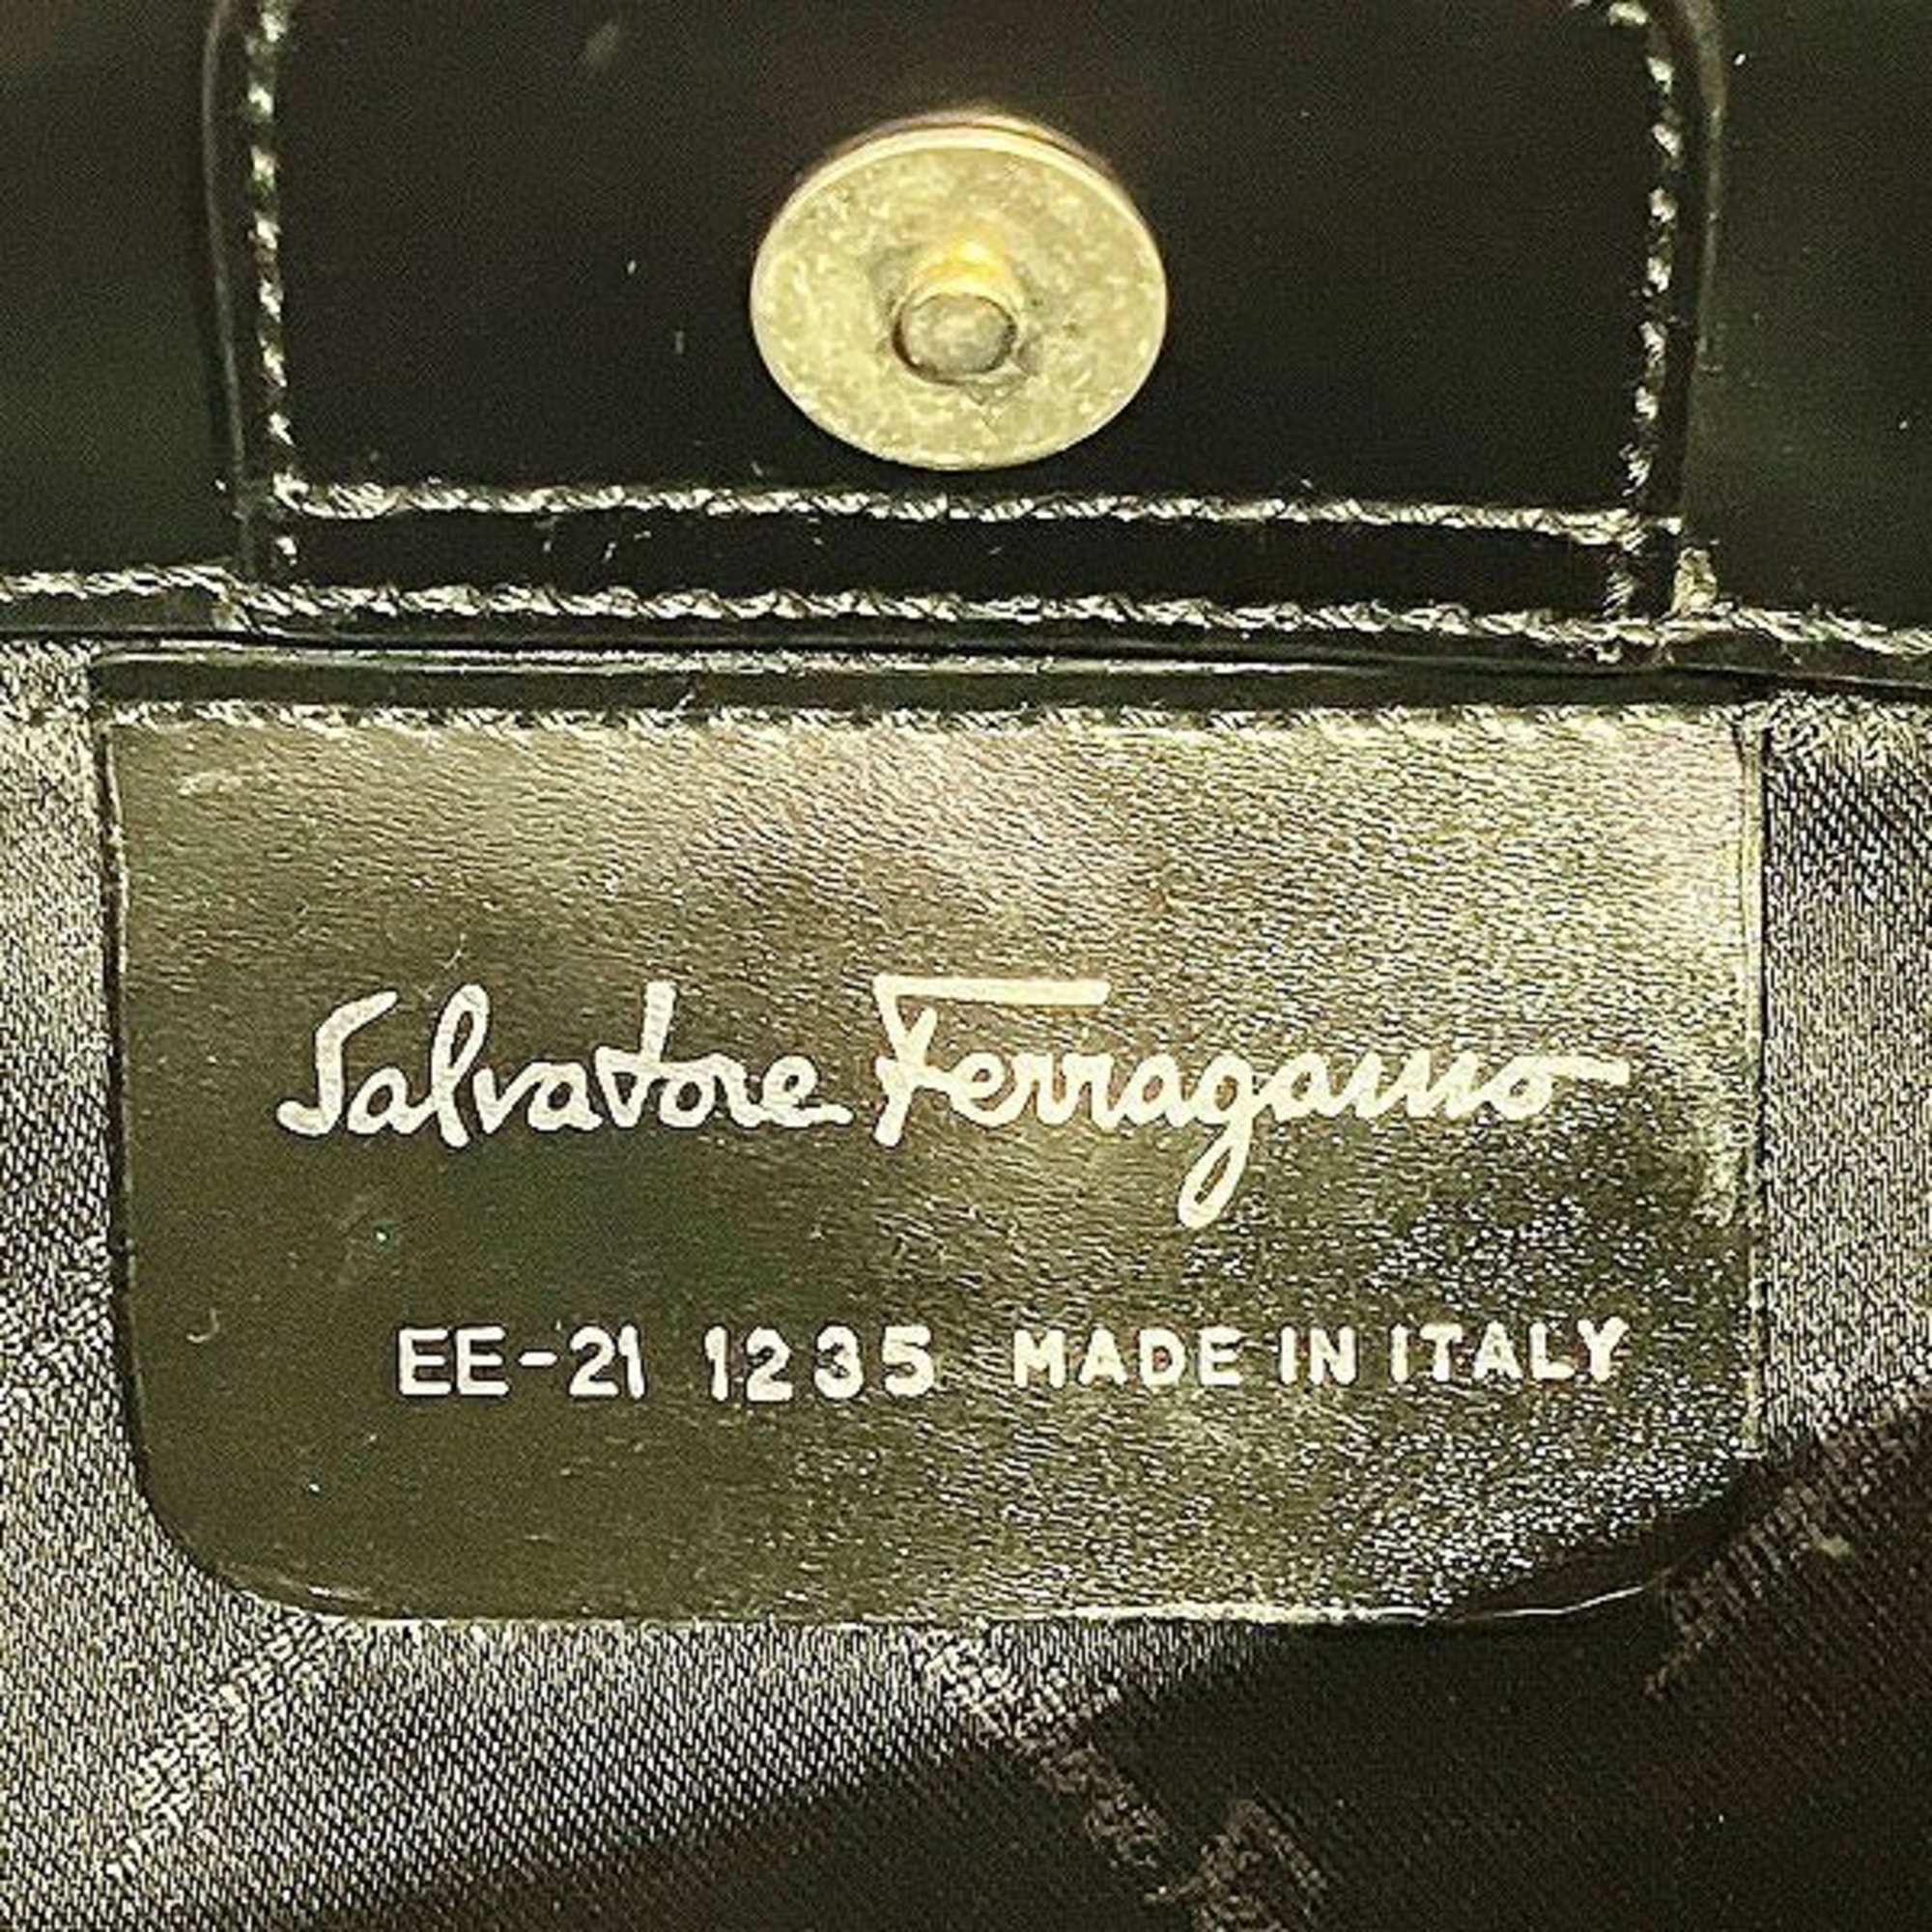 Salvatore Ferragamo Ferragamo Gancini leather embossed mini bag handbag ladies